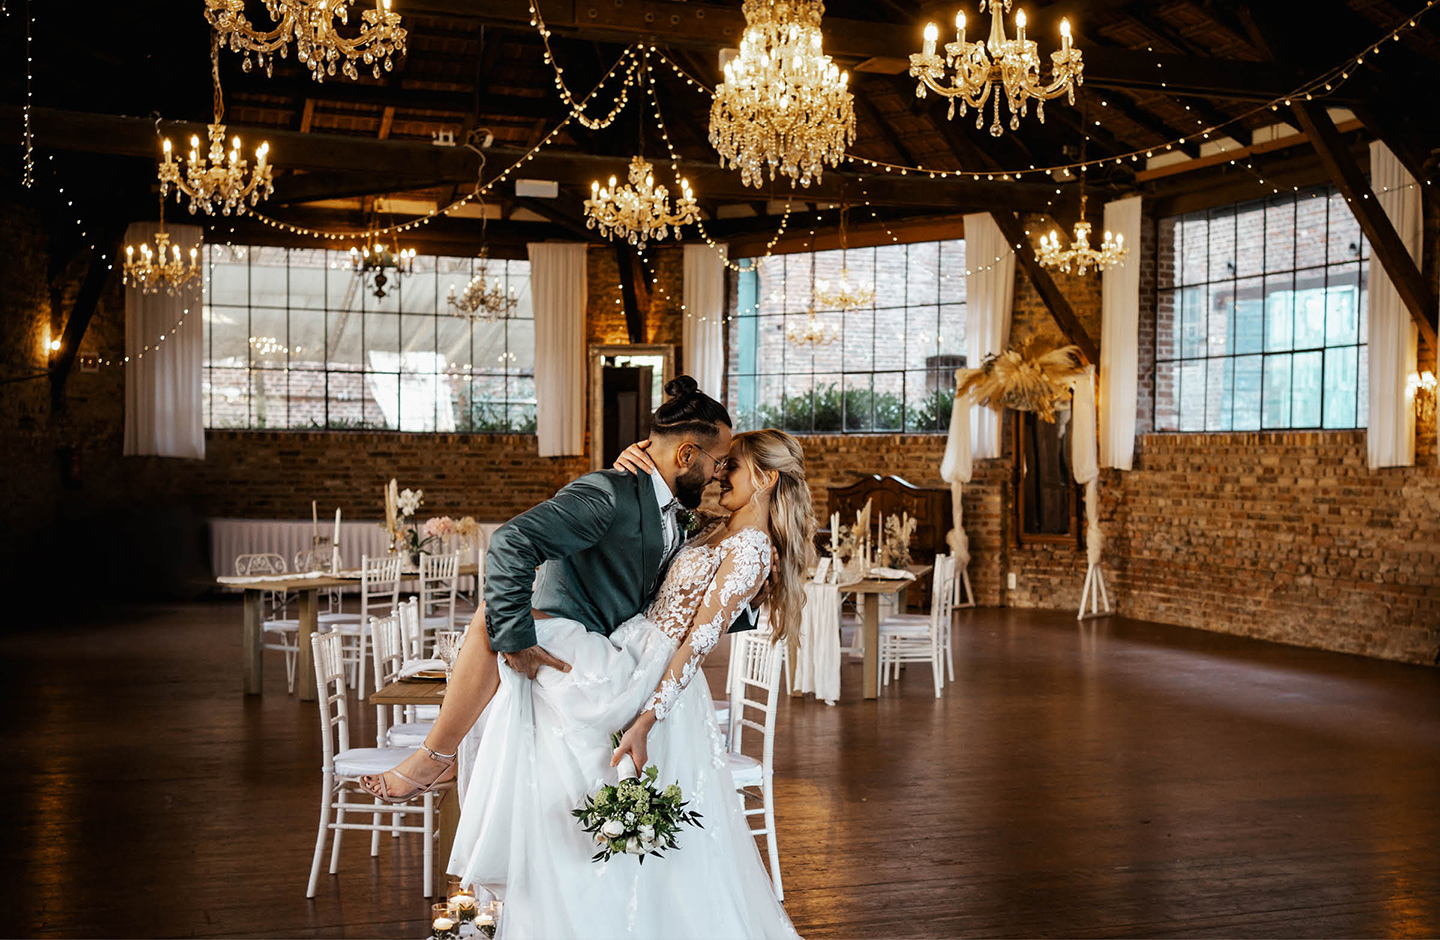  Braut und Bräutigam tanzen in der geschmückten, rustikalen Hochzeitslocation.